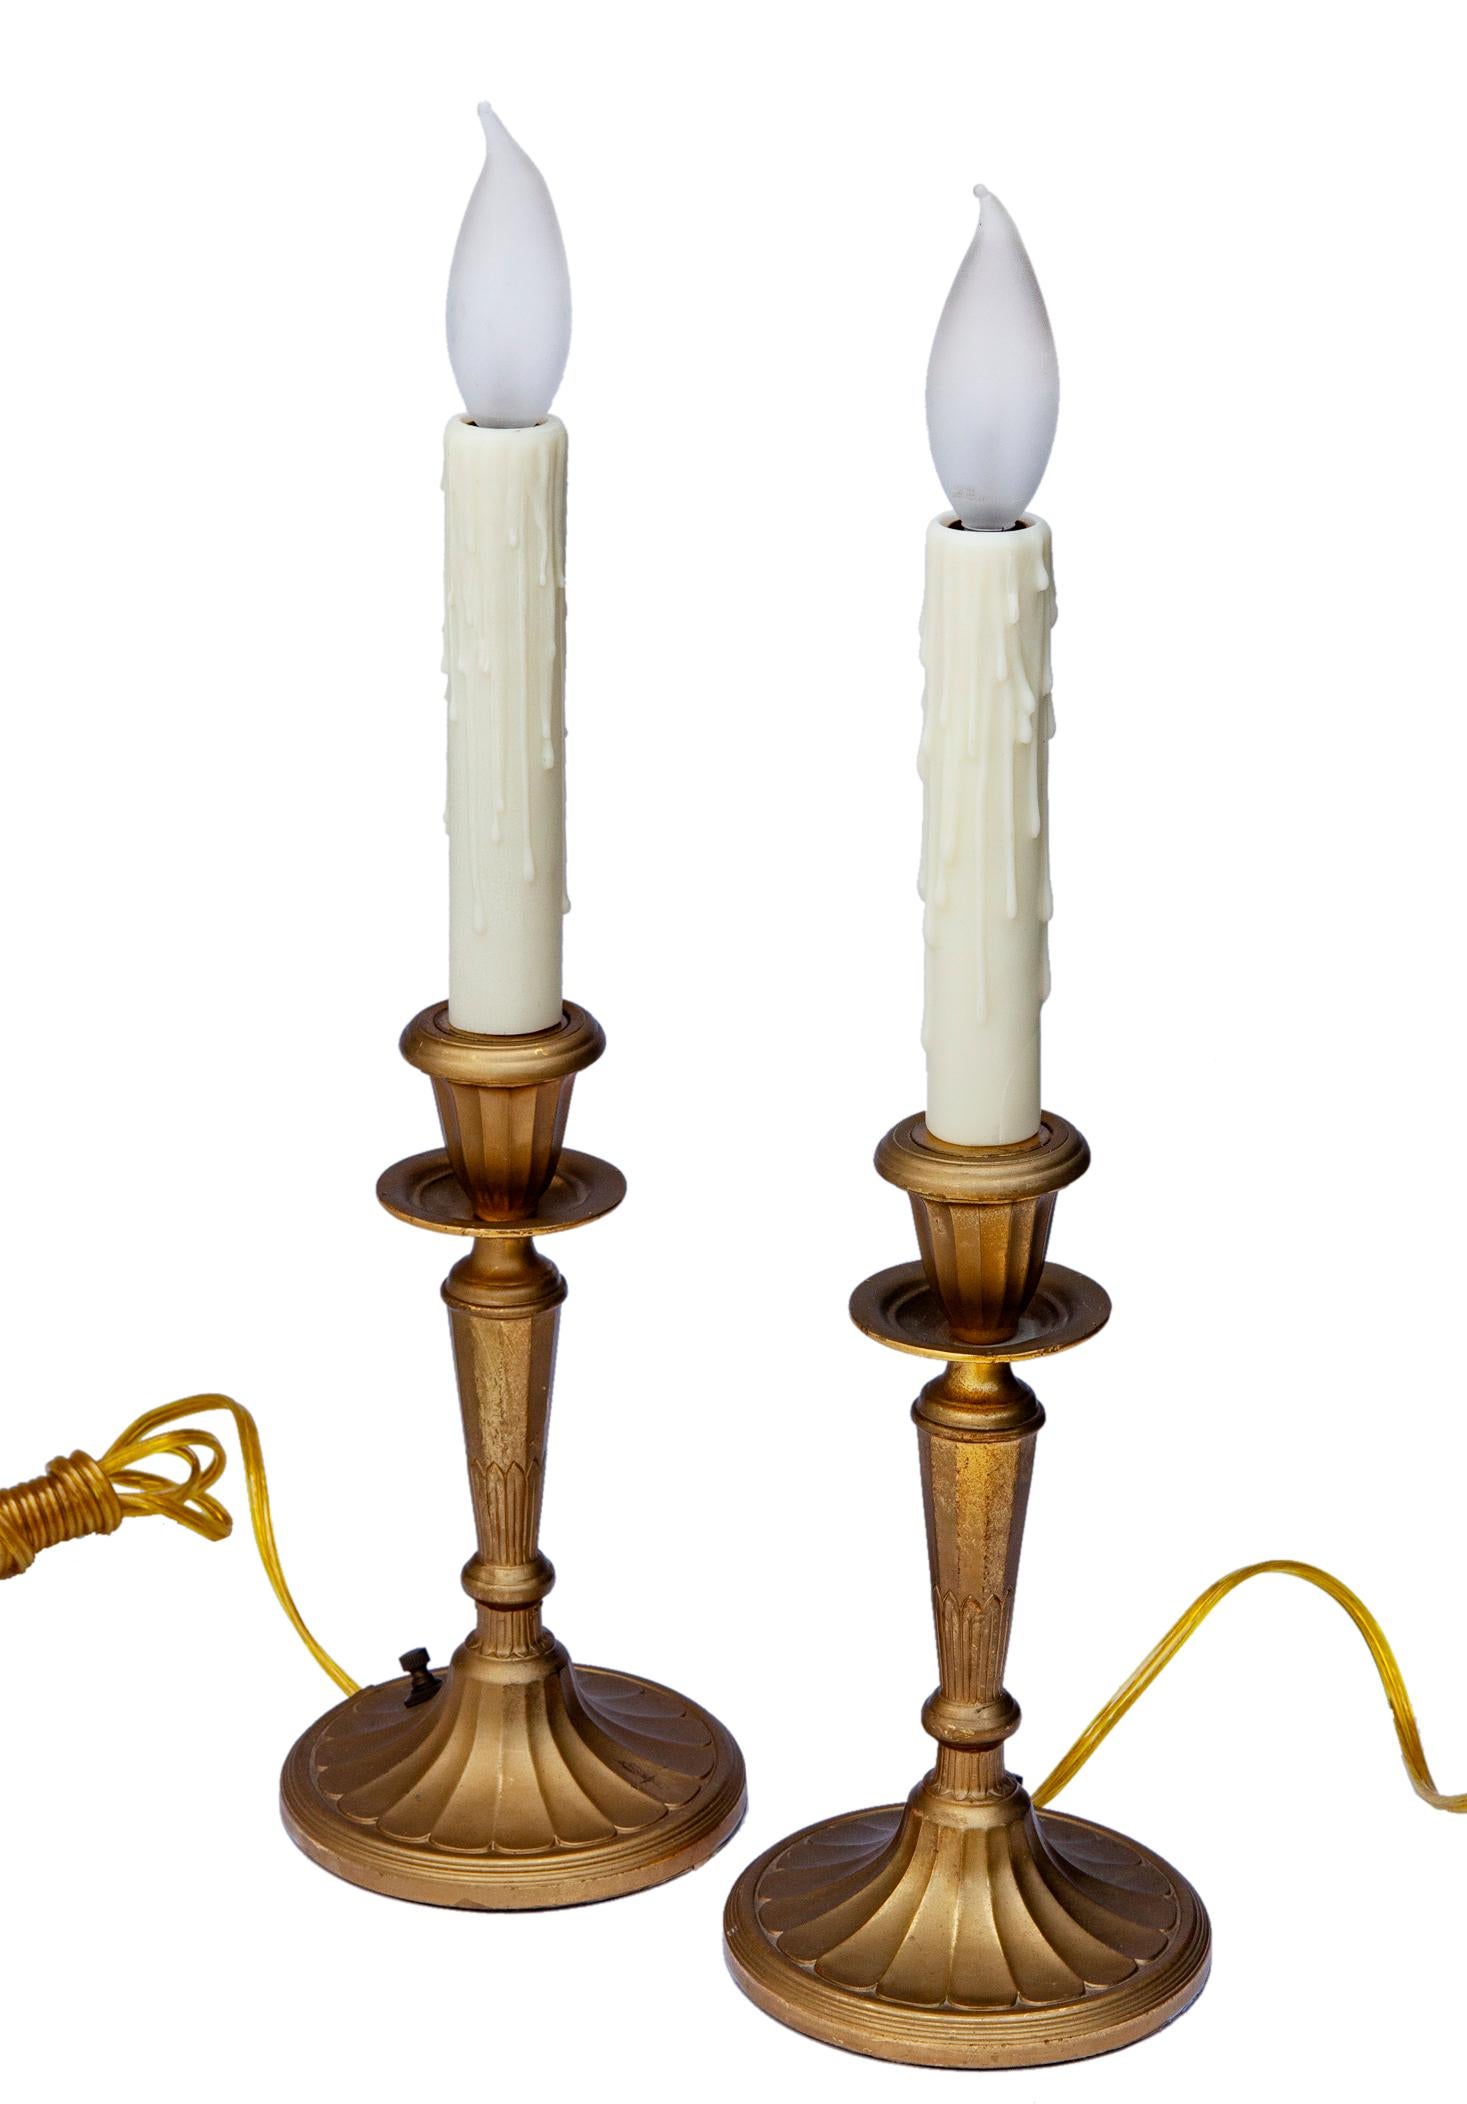 Les lampes-bougies en laiton doré ont été recâblées en utilisant l'interrupteur d'origine sur la base.
Les chandeliers sont ornés d'une cannelure.
Les lampes reposent sur une base ovale. 
Ils peuvent être utilisés avec ou sans abat-jour à clipser.
